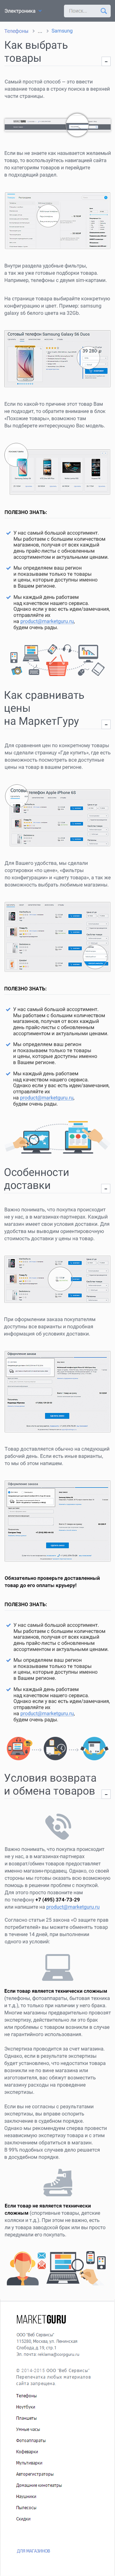 Создание страницы сайта для marketguru.ru (моб. вер.), 2016 г.